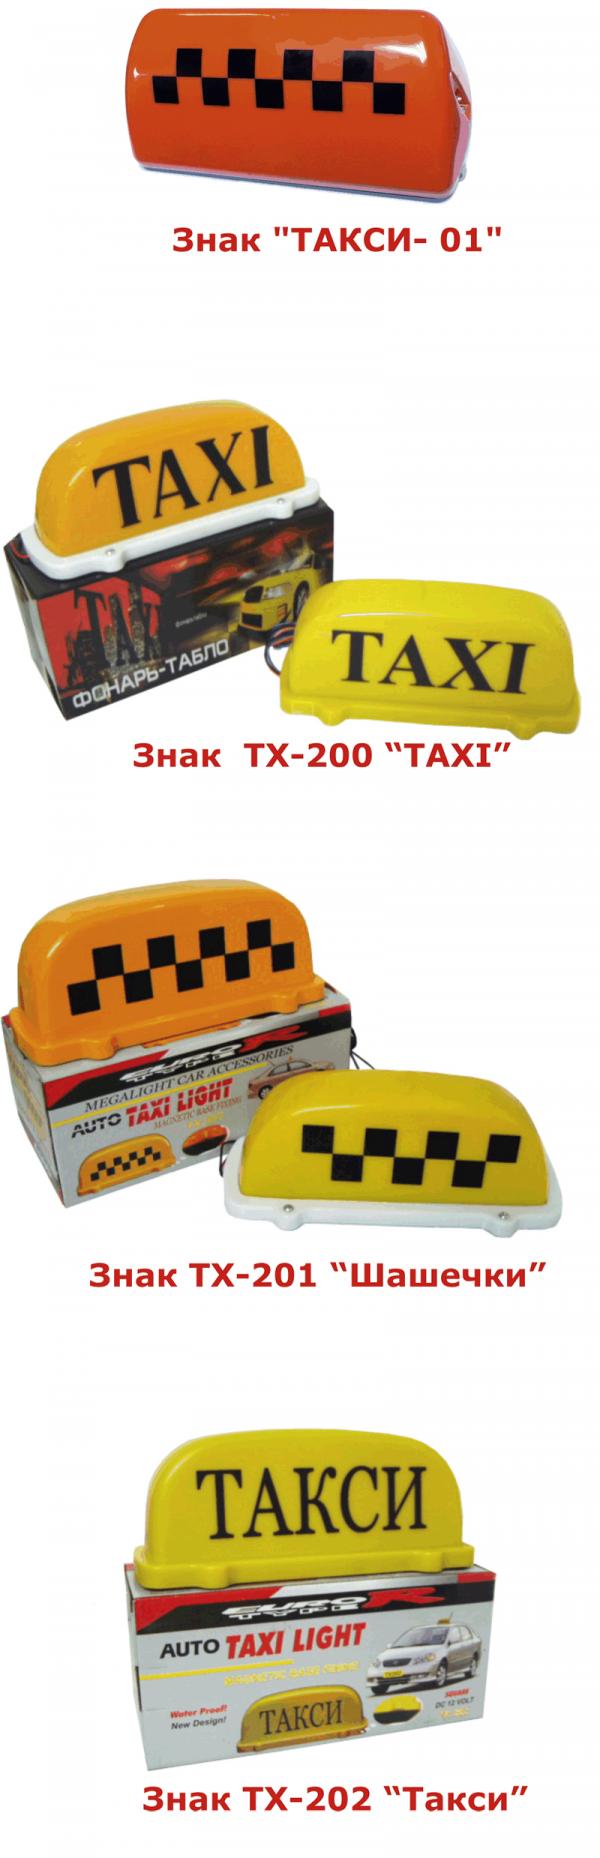 Деятельность такси лицензируют